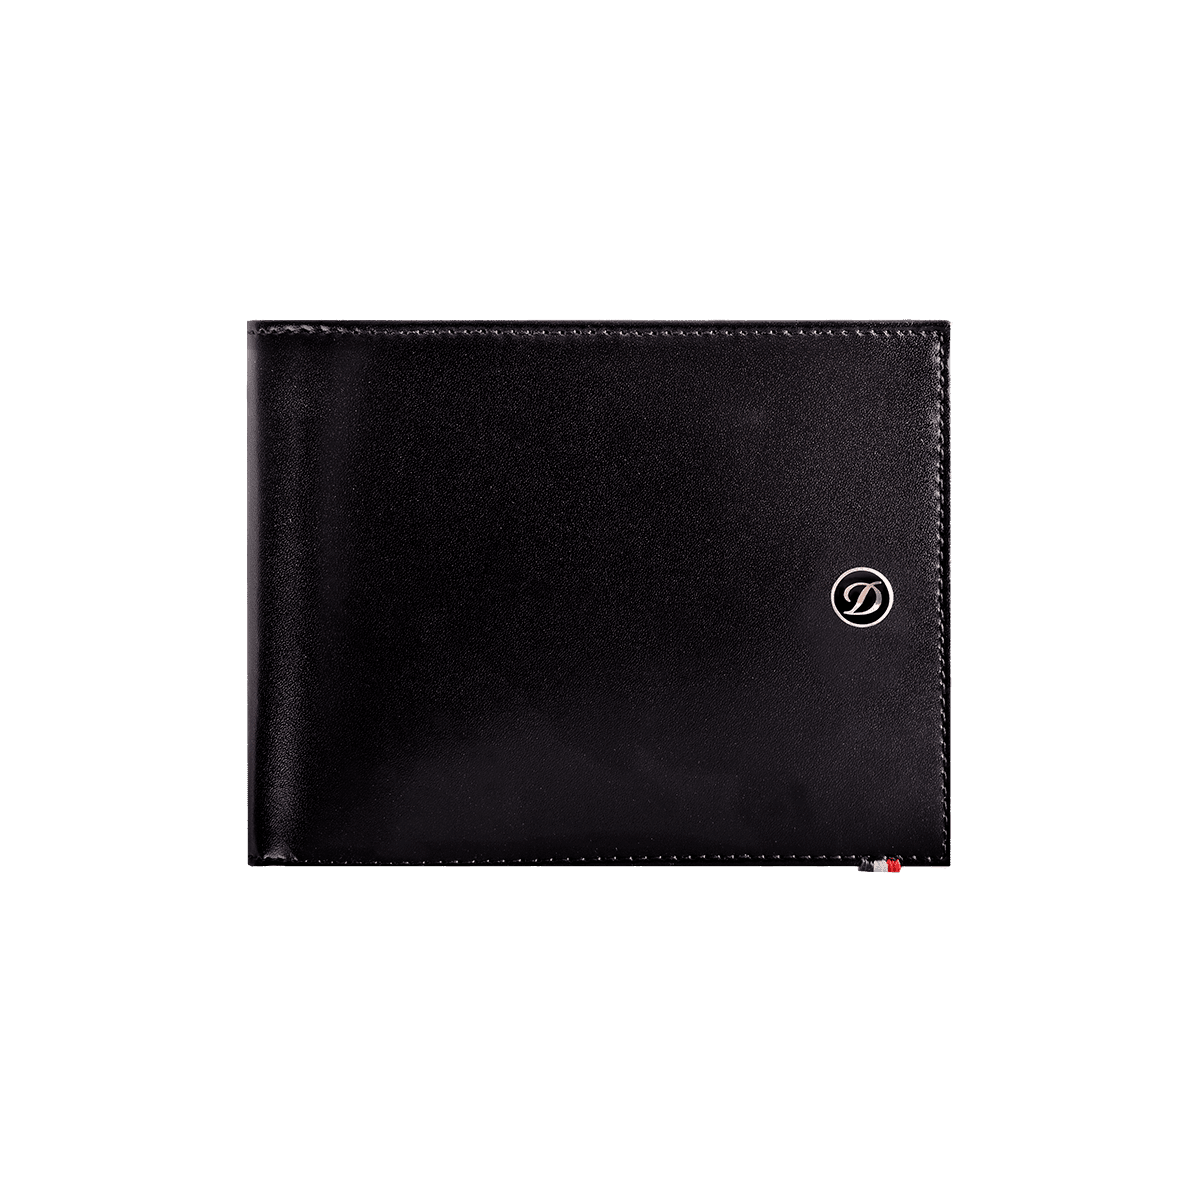 Портмоне Line D 180007 Цвет Чёрный Пормоне, 4 отделения для кредитных карт, отделение для мелочи | S.T. Dupont